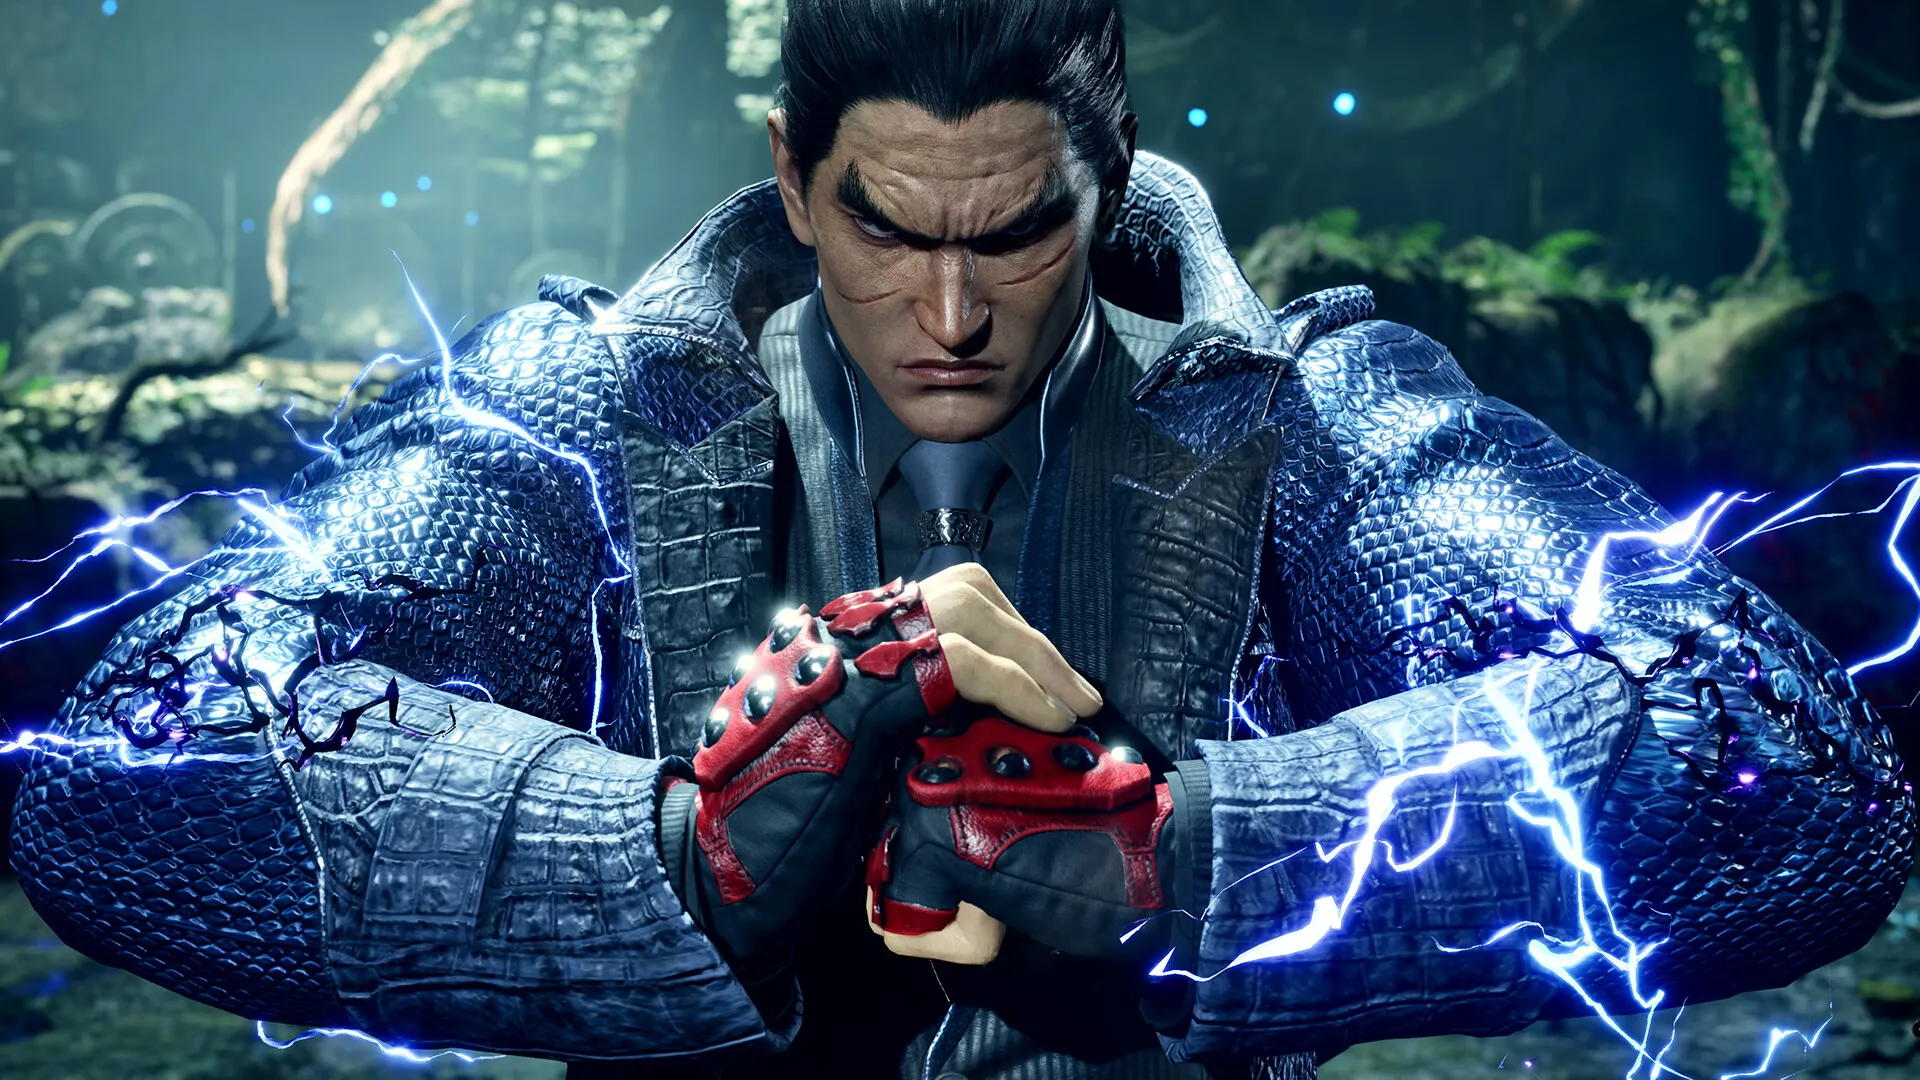 Site oficial de Tekken 7 faz possível teaser para novo personagem DLC - PSX  Brasil